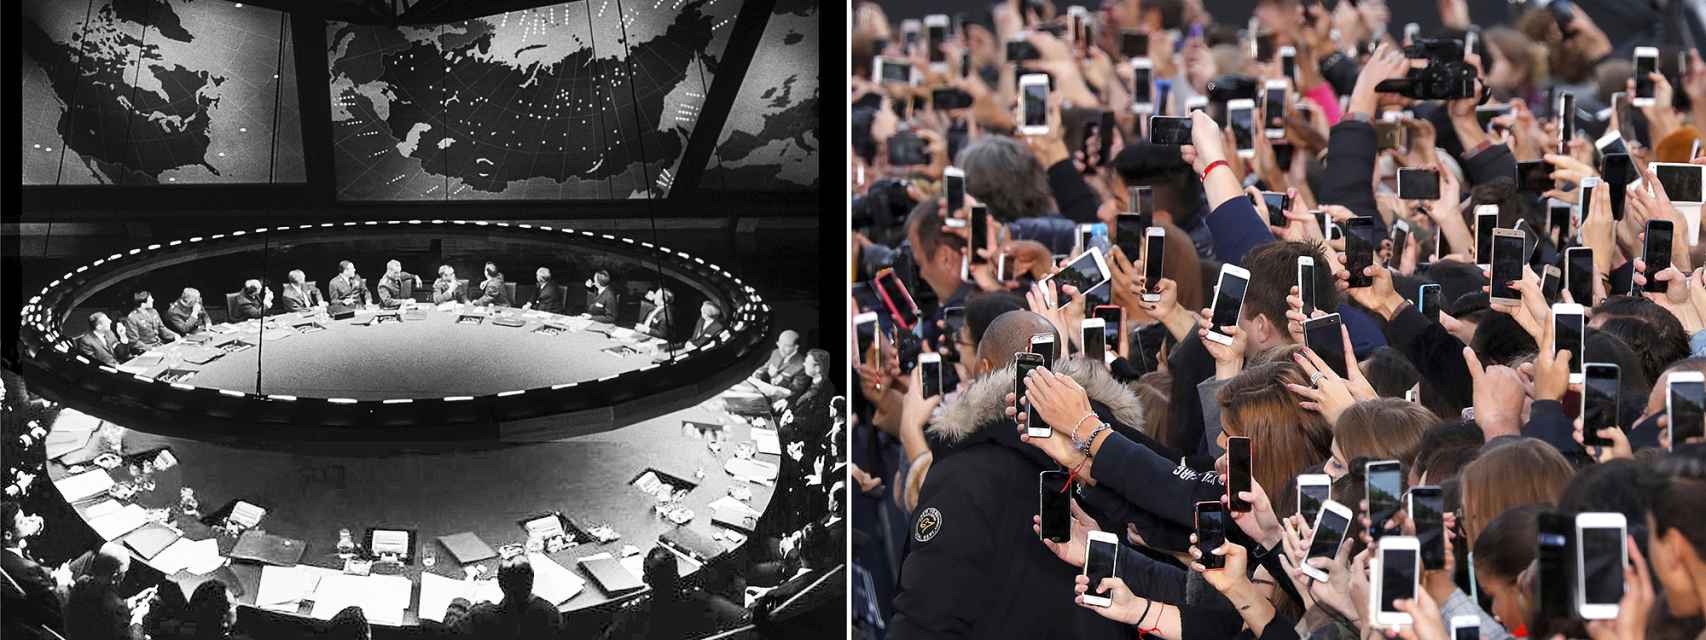 Entre la imagen de la izquierda, la Sala de Guerra de la Pelicula Teléfono Rojo ¿Volamos hacia Moscú? de Kubrick, -que asociamos con los misiles de la Guerra Fría–, y la multitud conectada al Internet movil han pasado 60 años. En esa cronología cabe toda la historia de Internet.